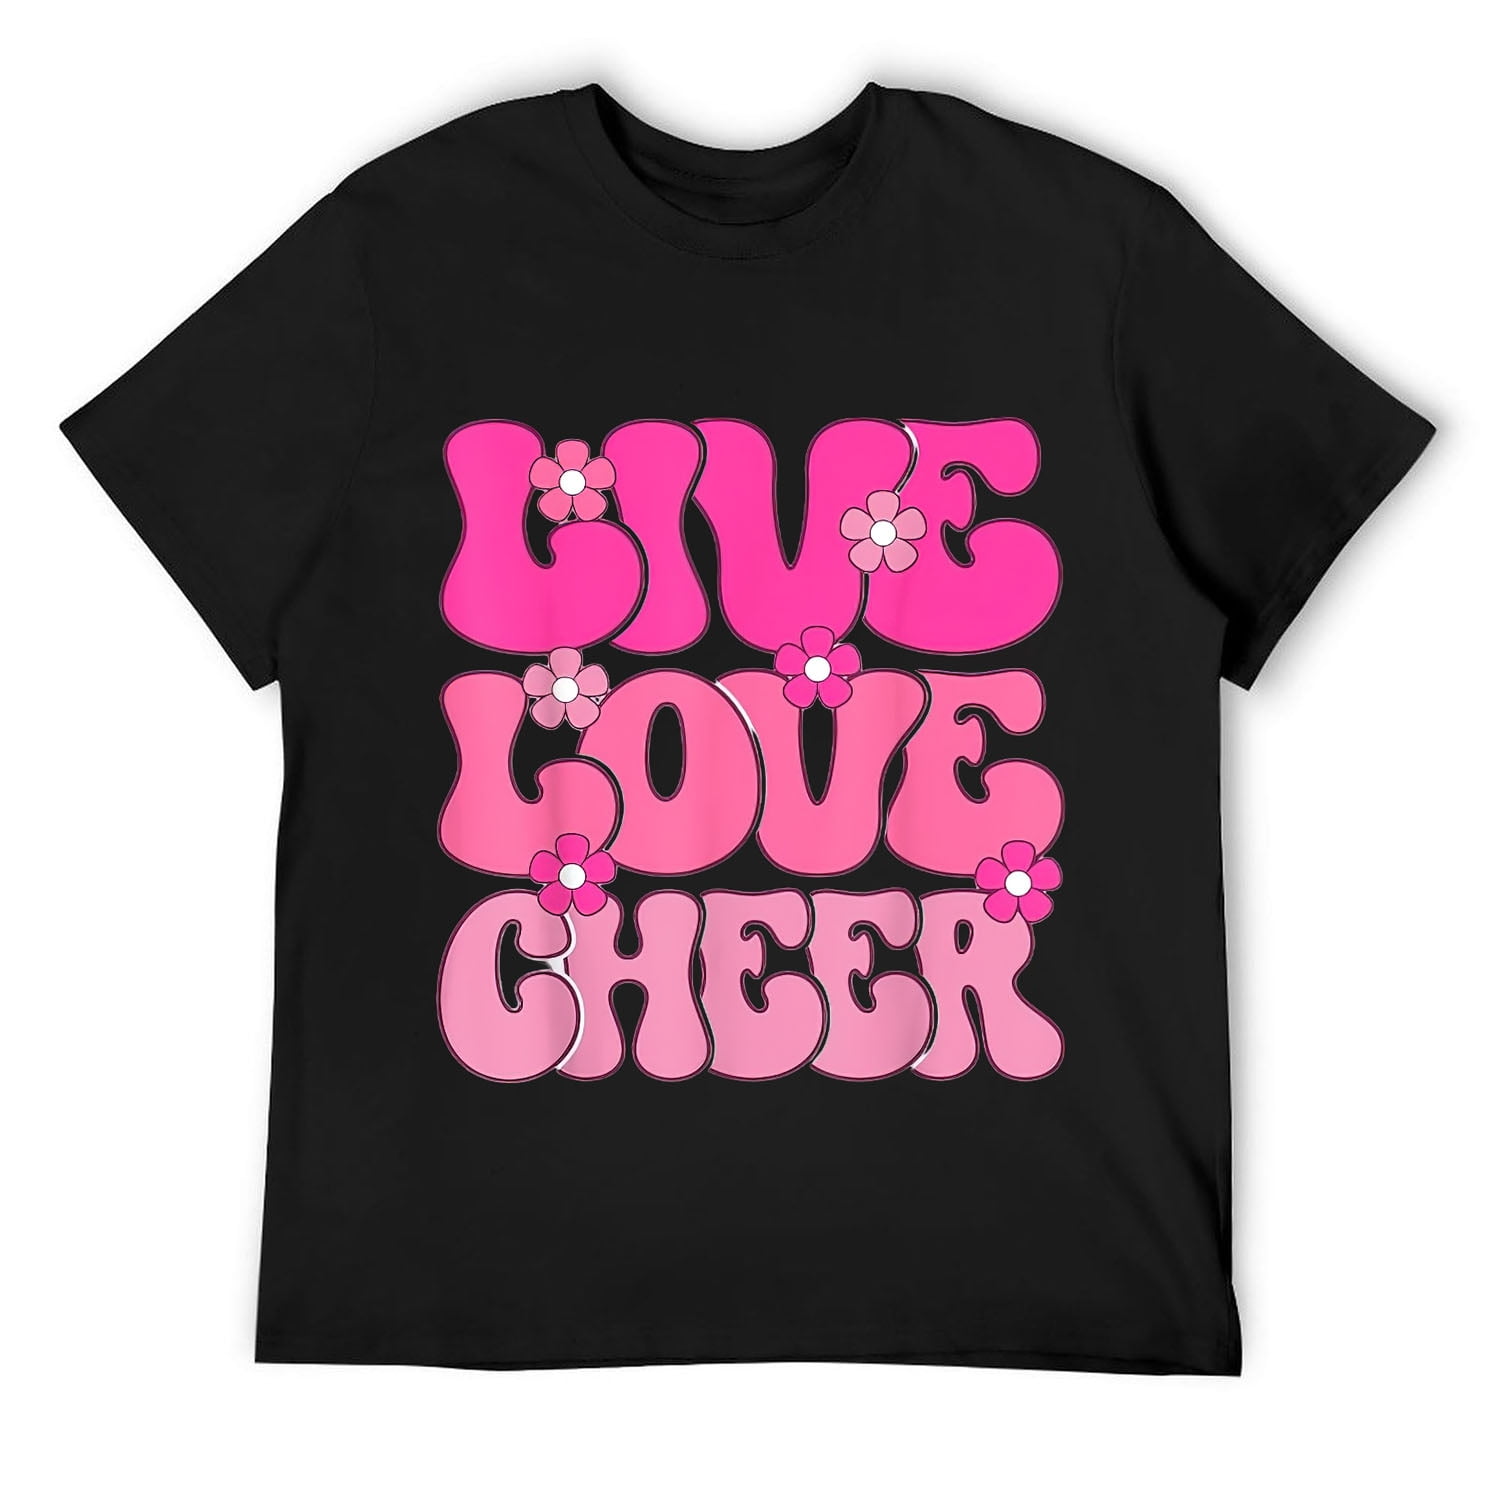 Live Love Cheer Girl Cheerleading Cheerleader Women Cheer T-Shirt Black ...